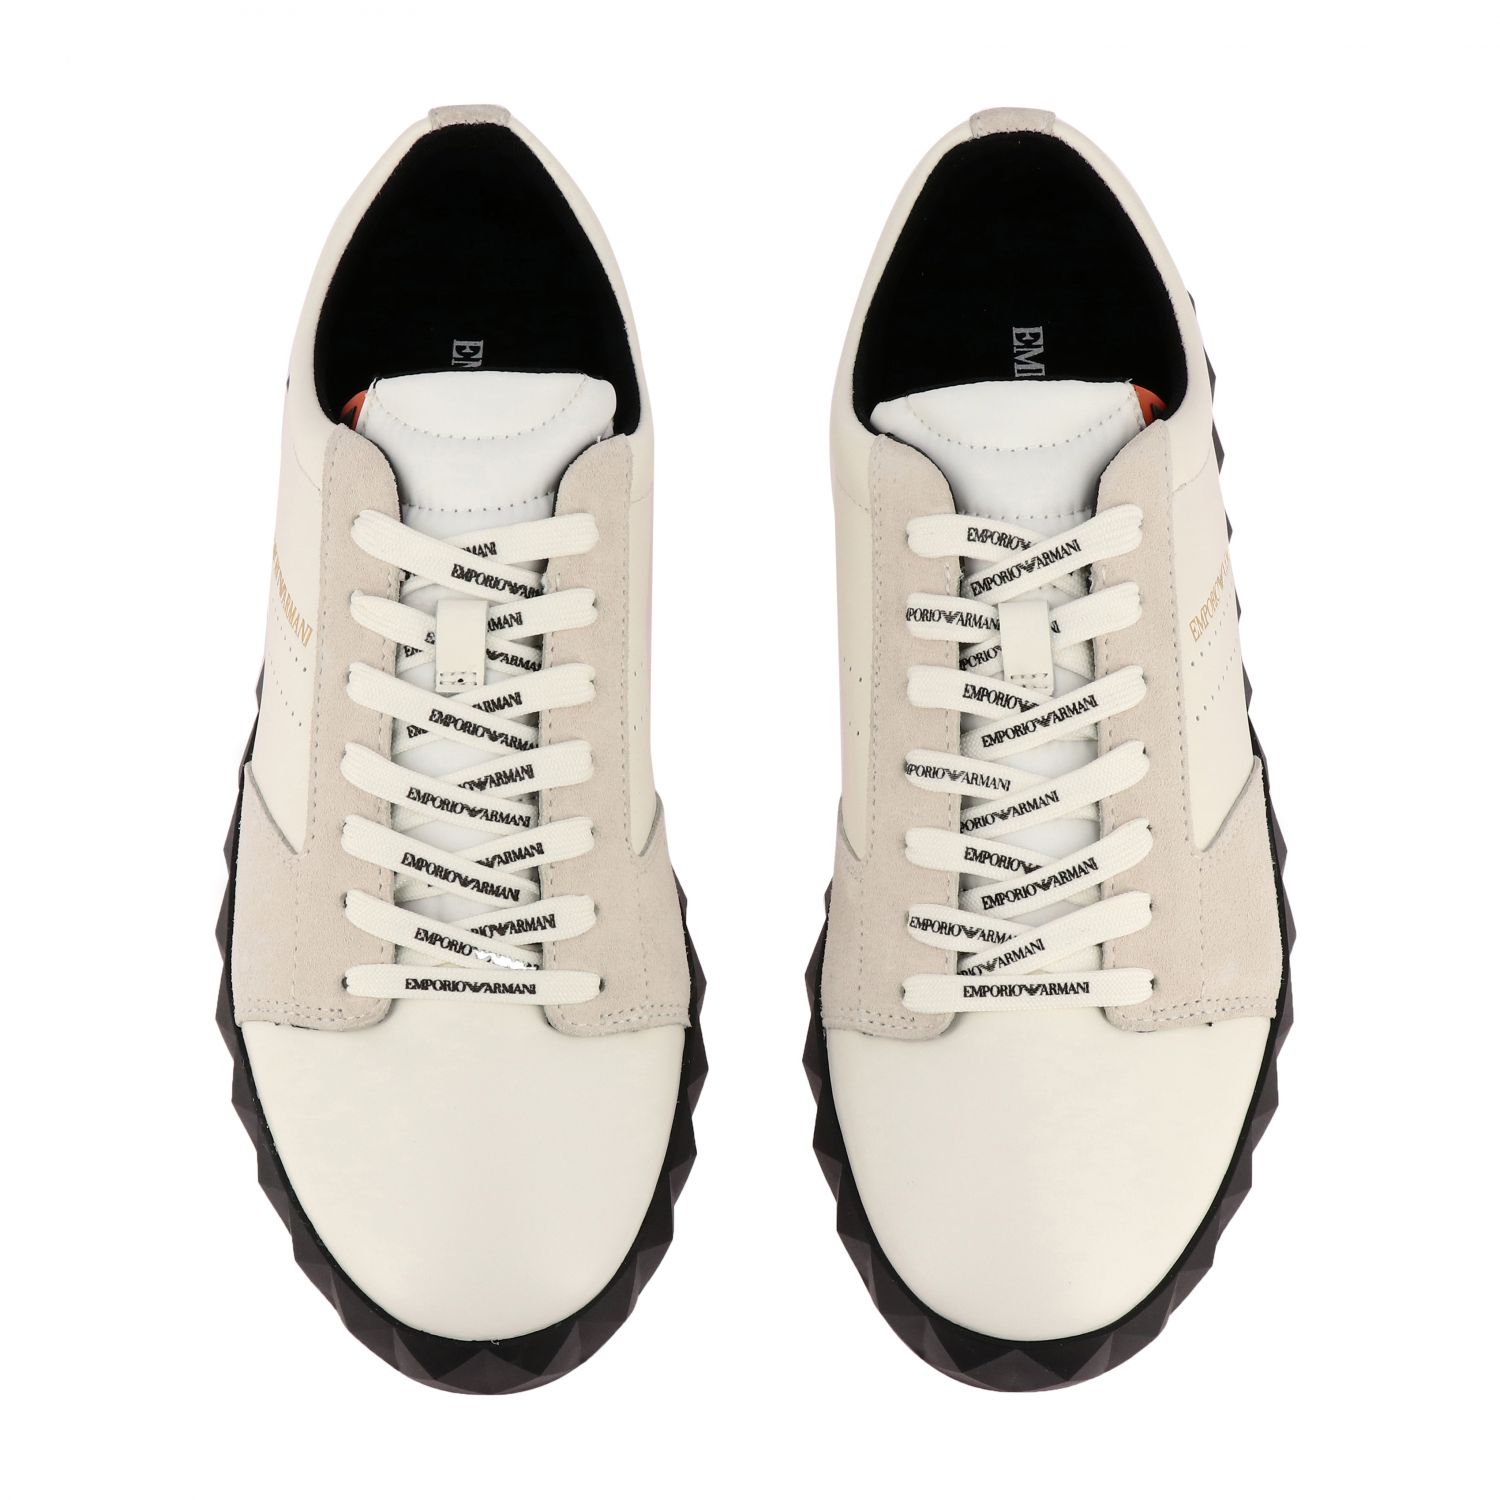 Emporio Armani Outlet: Shoes men | Sneakers Emporio Armani Men White ...